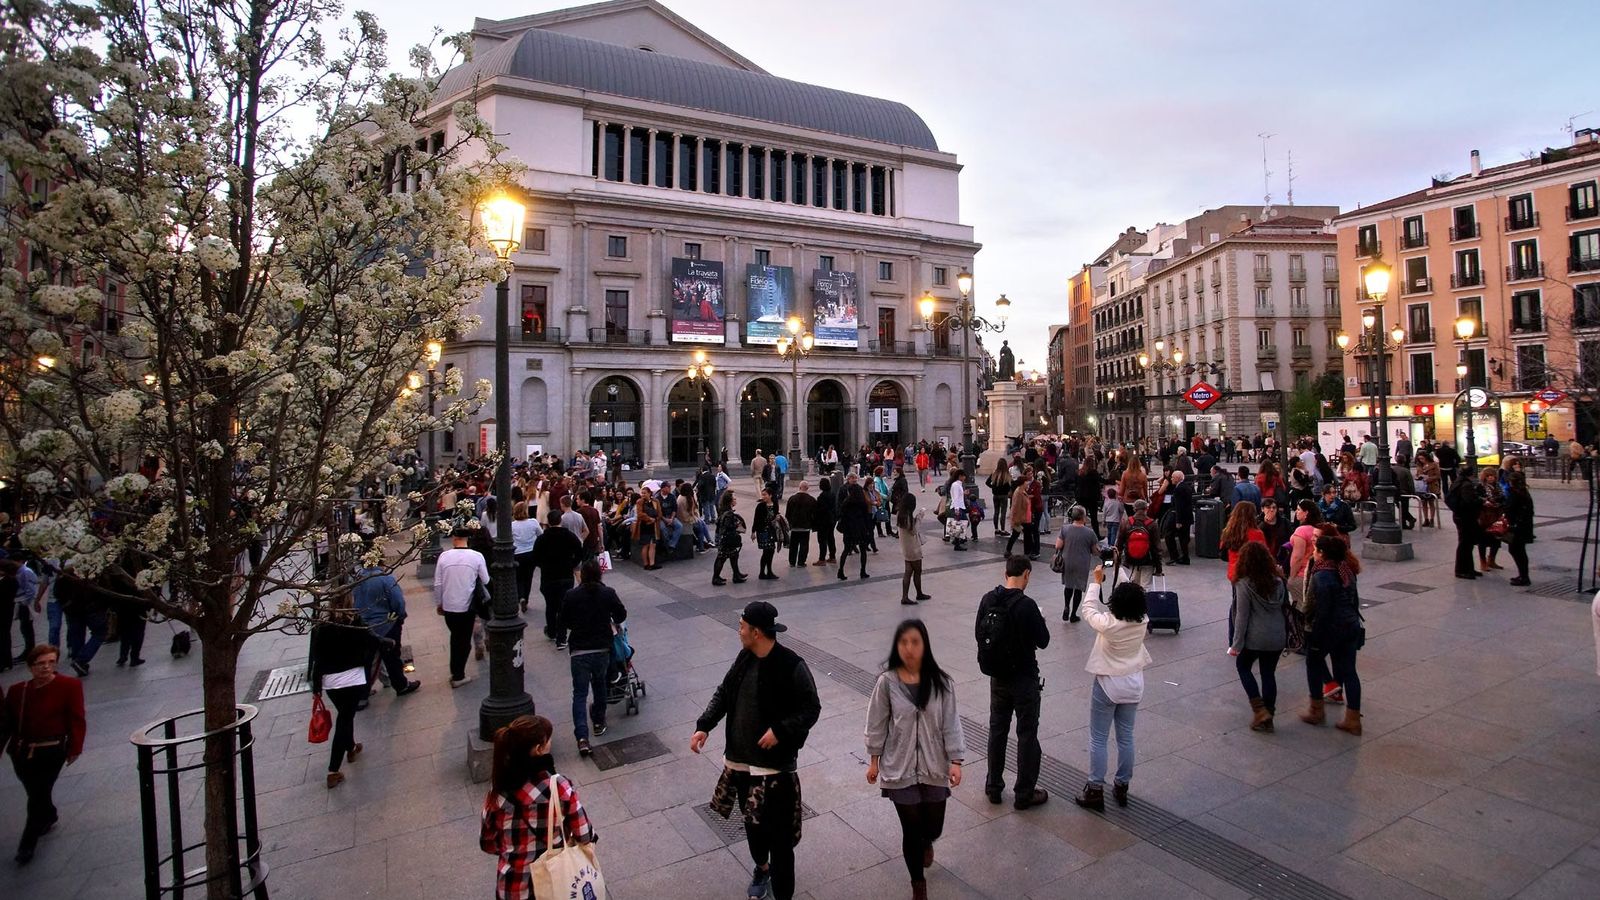 Foto: Imagen de la fachada del Teatro Real. (Javier del Real)